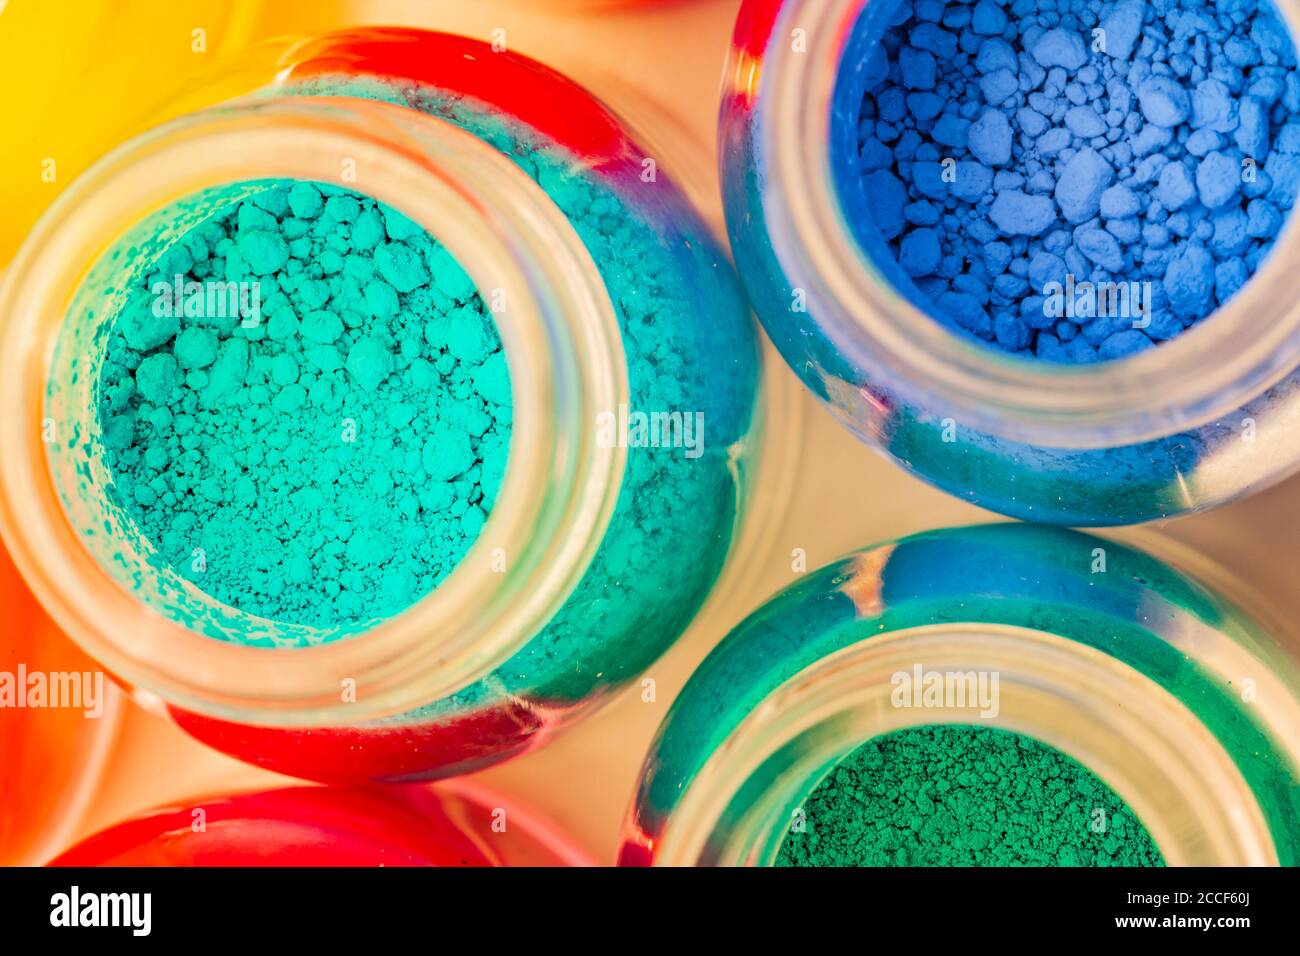 Vasi colorati con pigmenti colorati Foto Stock